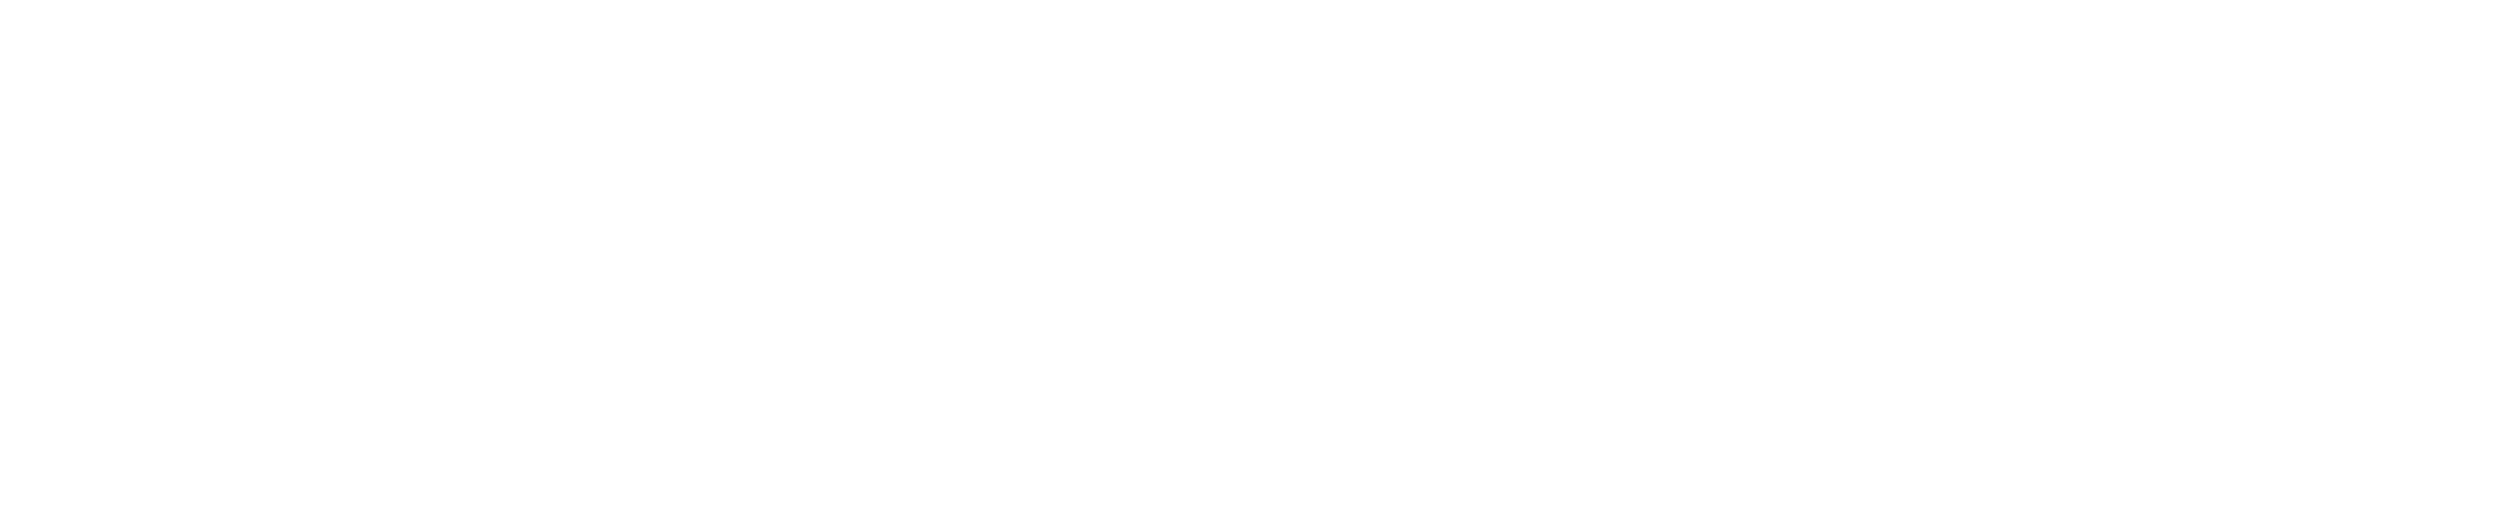 movebit-logo